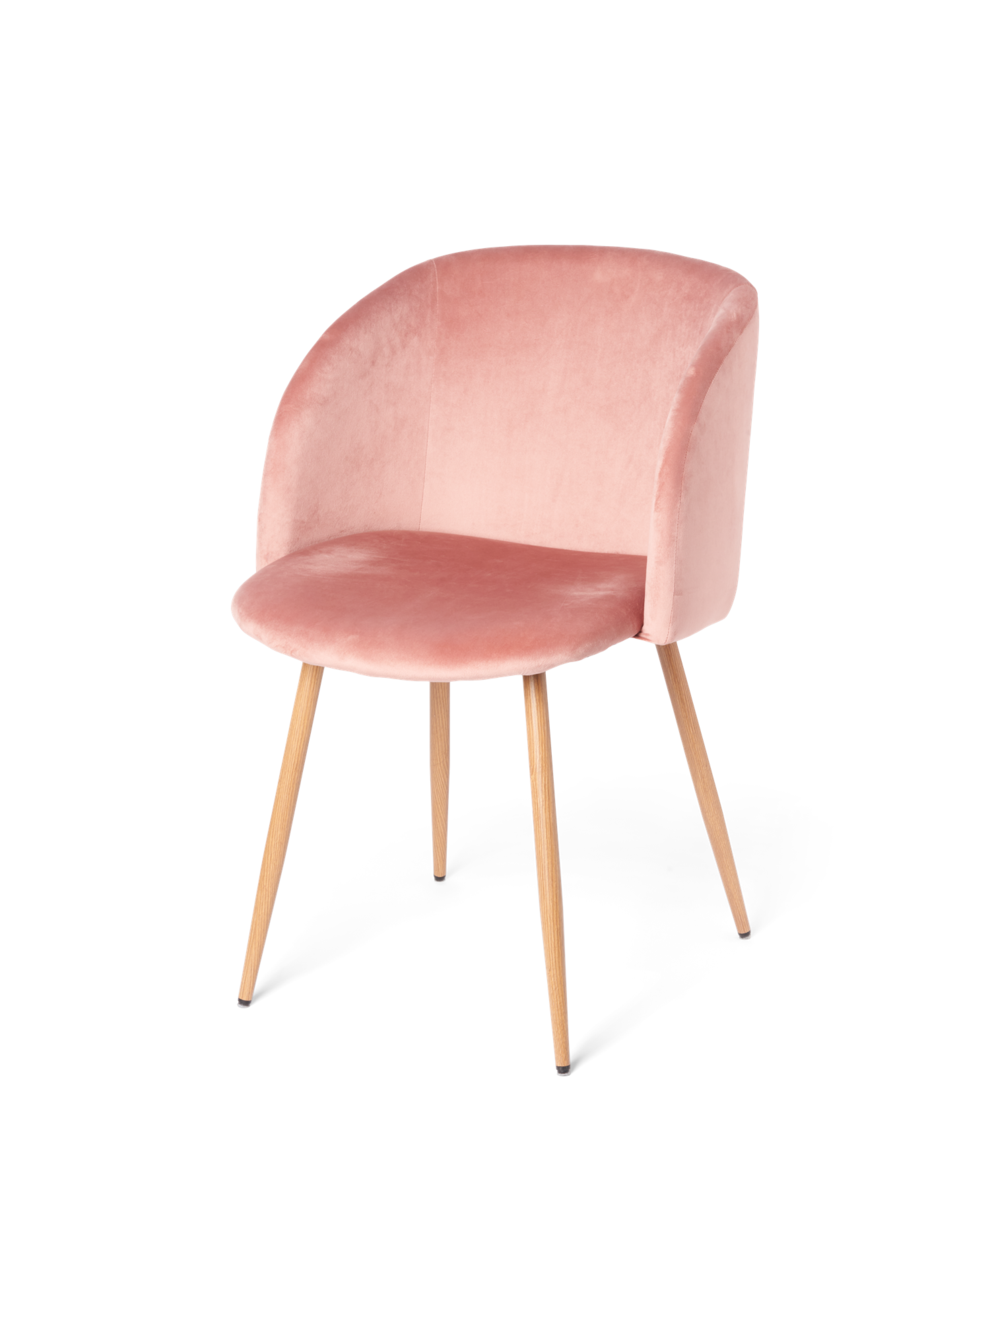 Velvet chair offers at £69.8 in Søstrene Grene